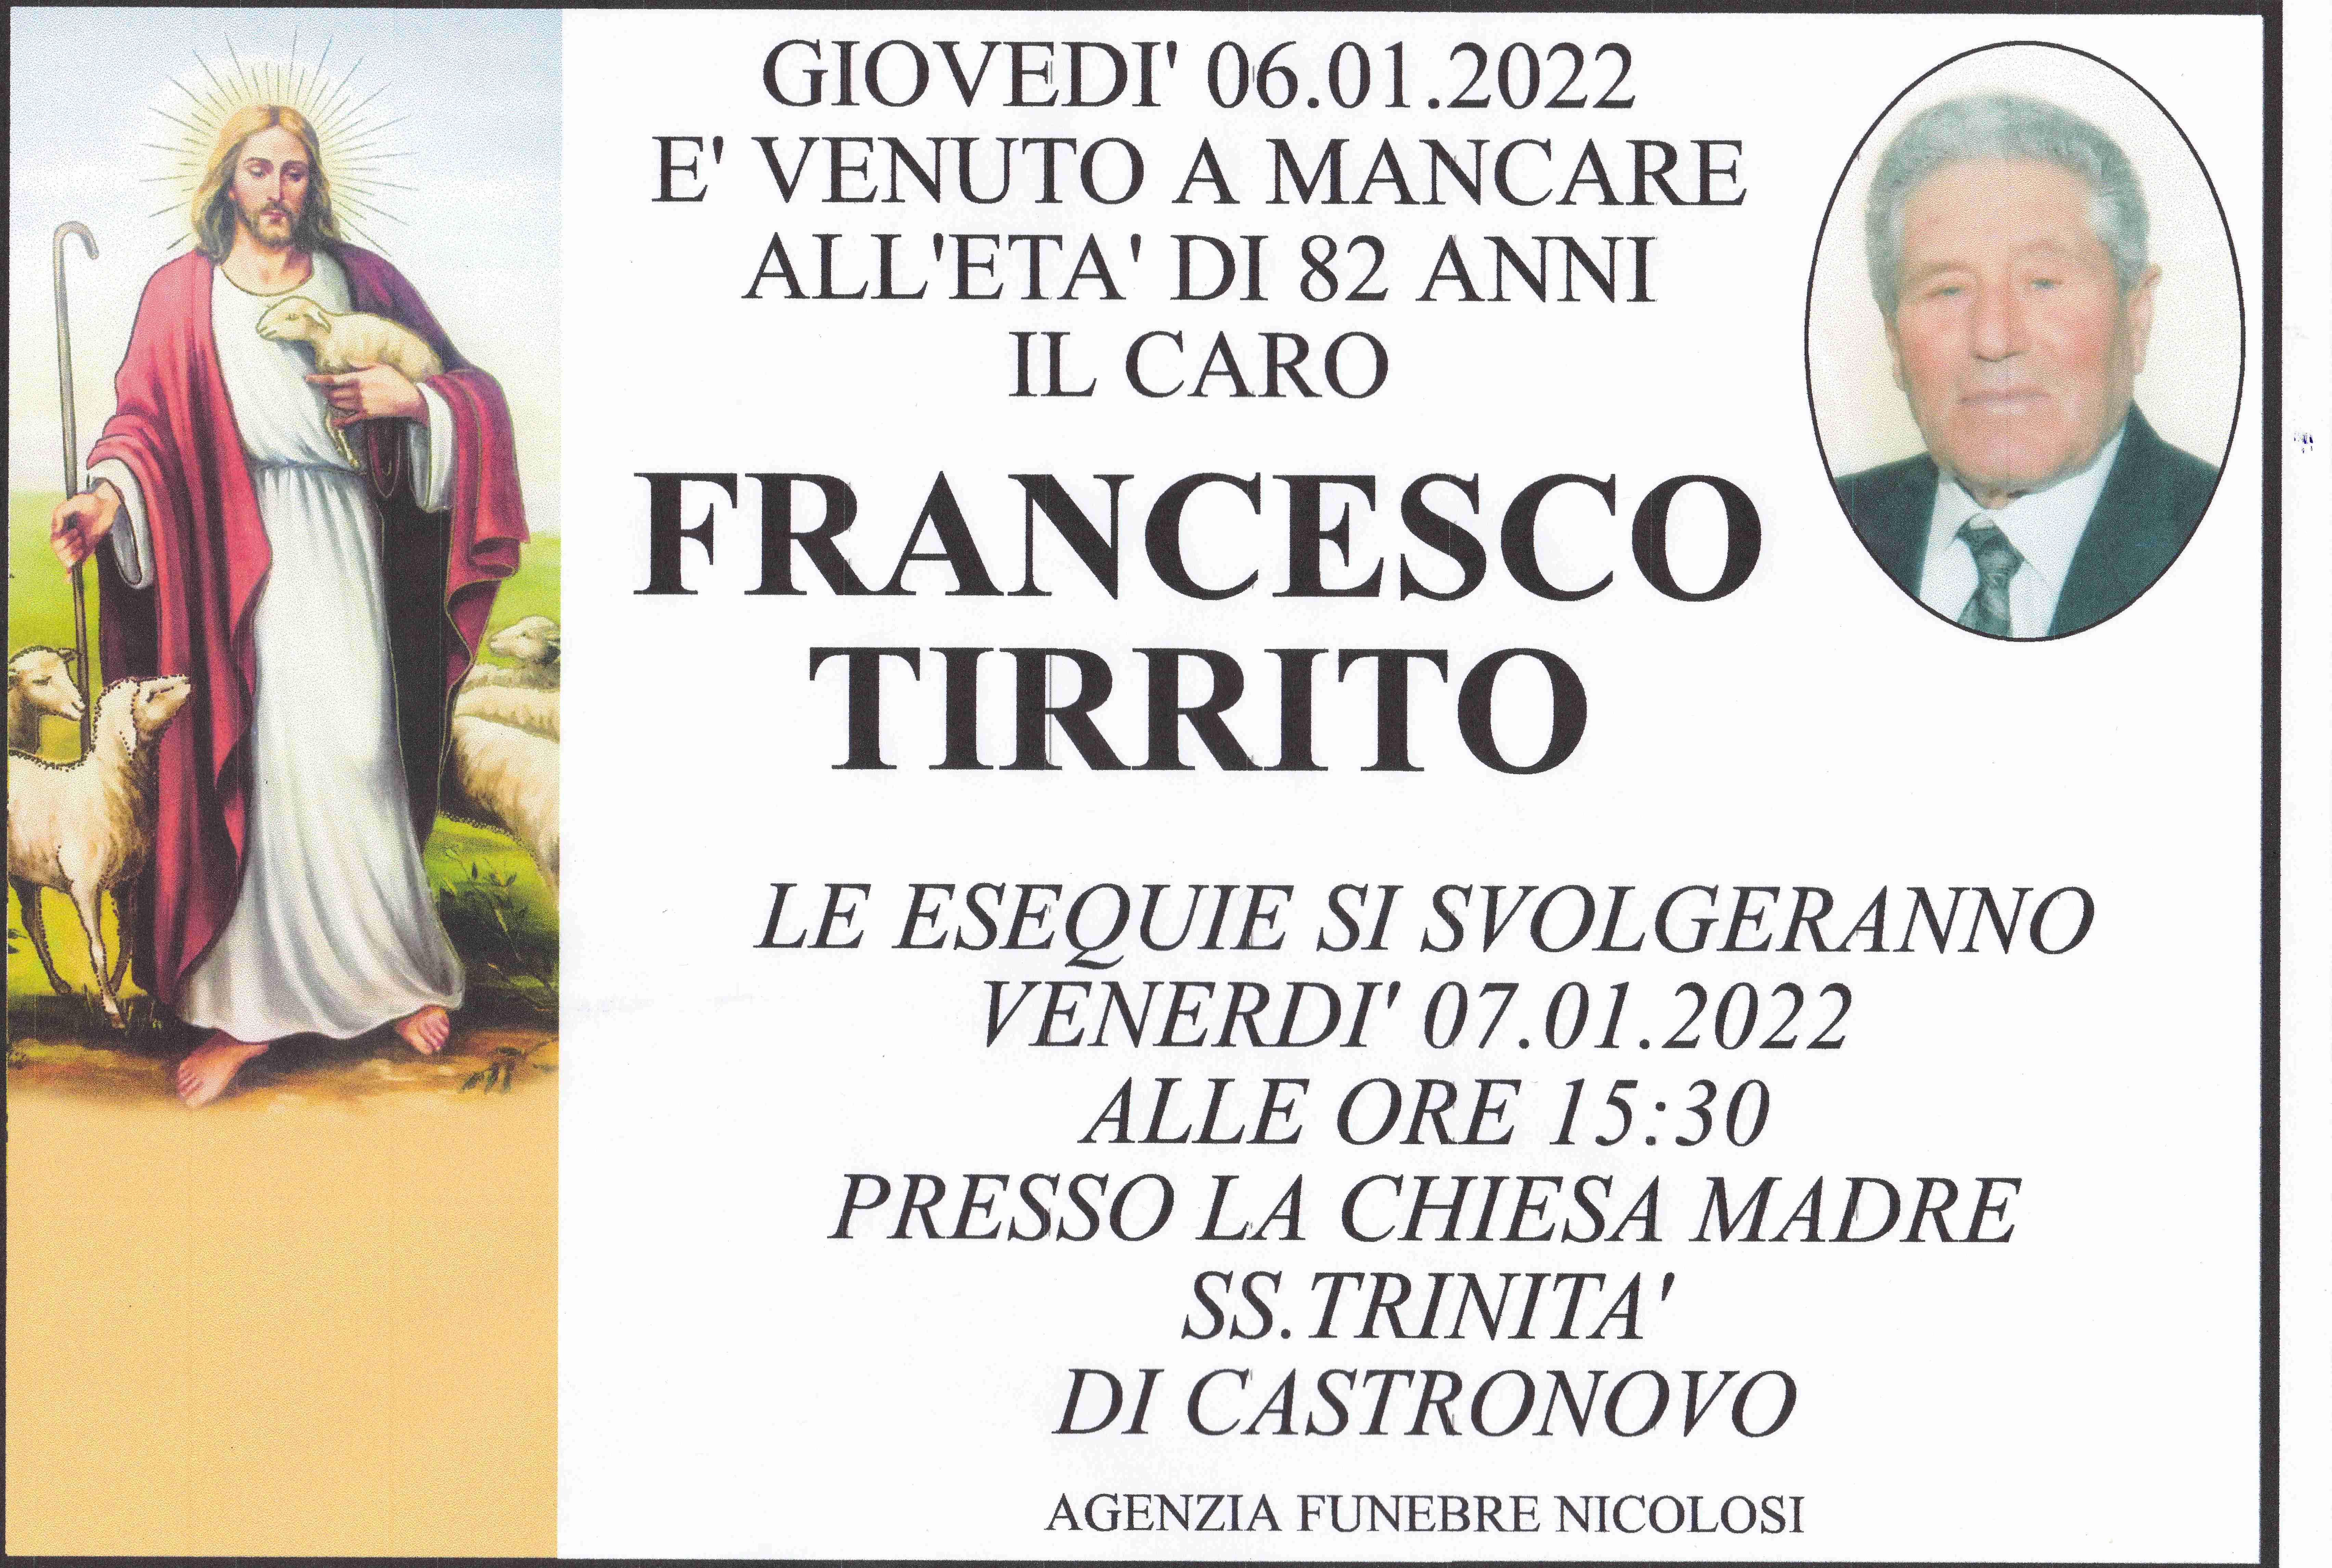 Francesco Tirrito